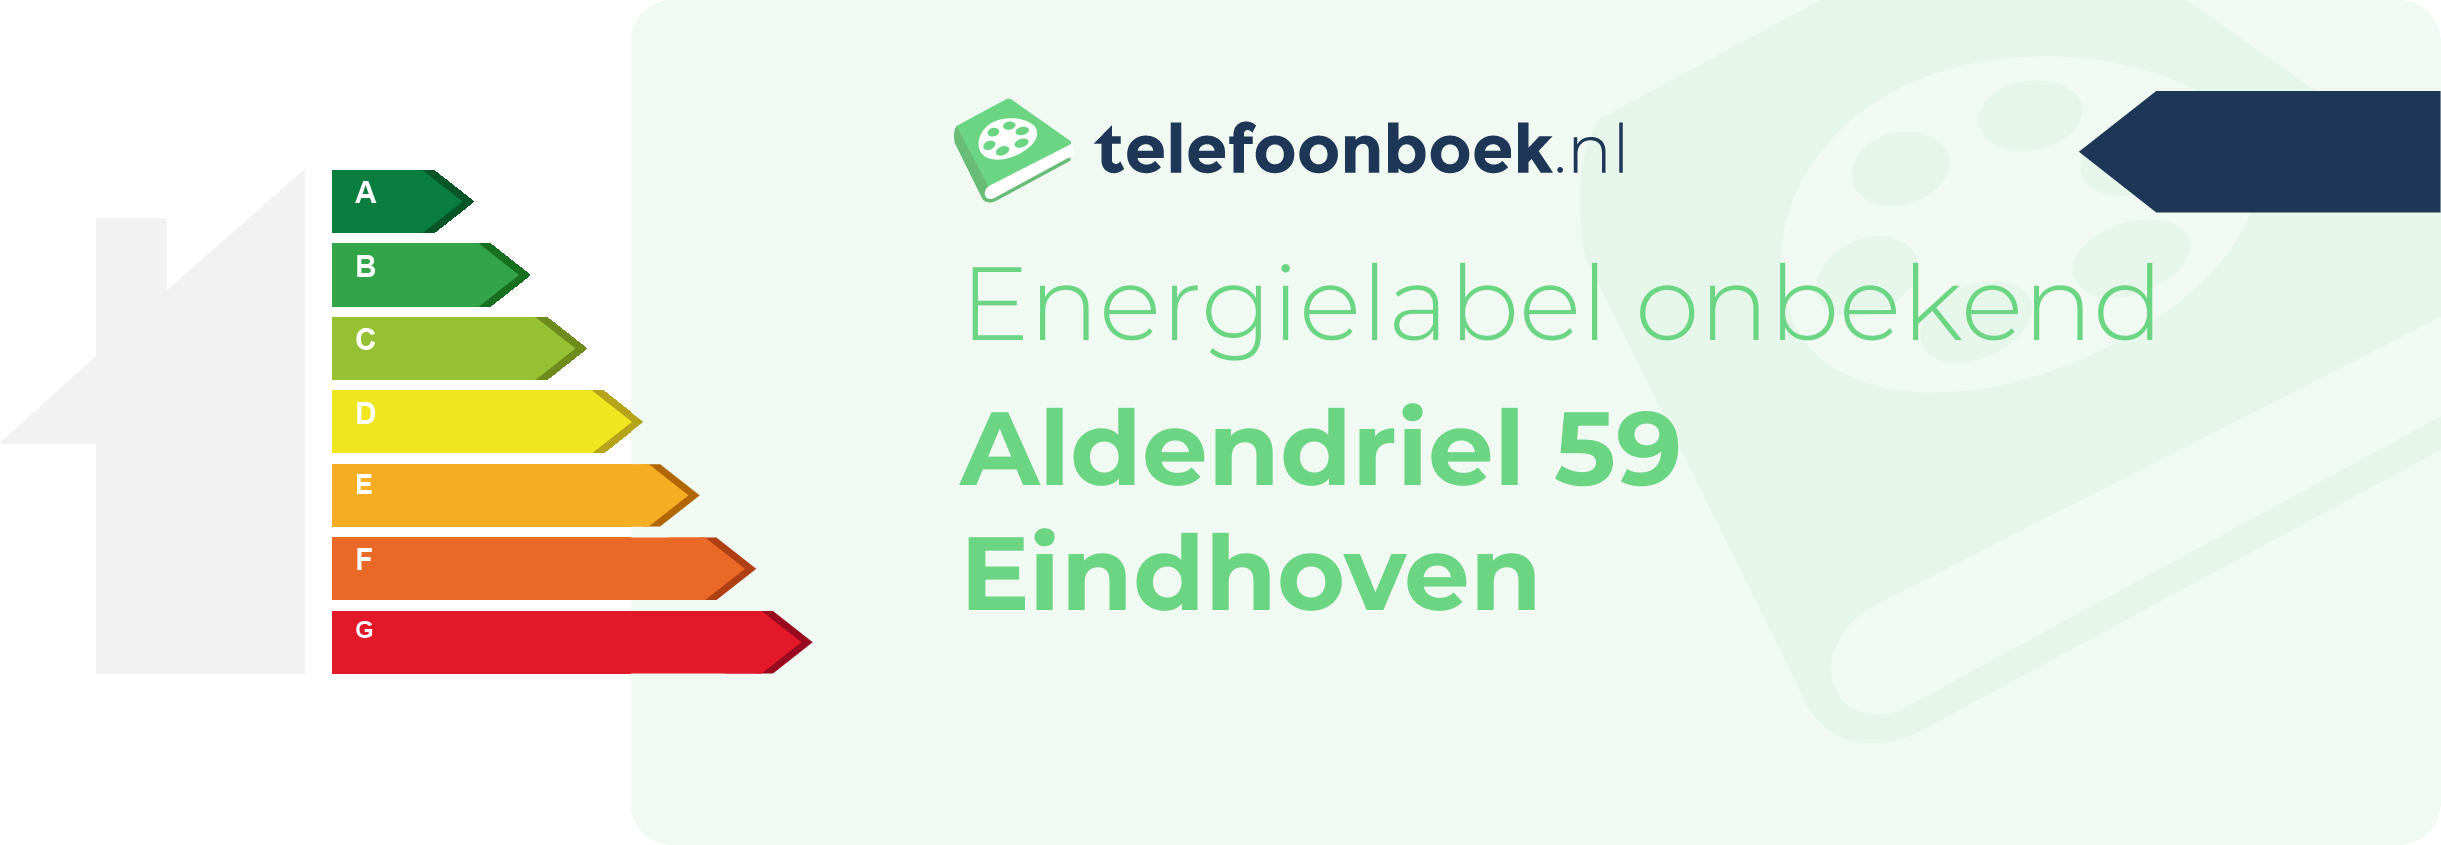 Energielabel Aldendriel 59 Eindhoven